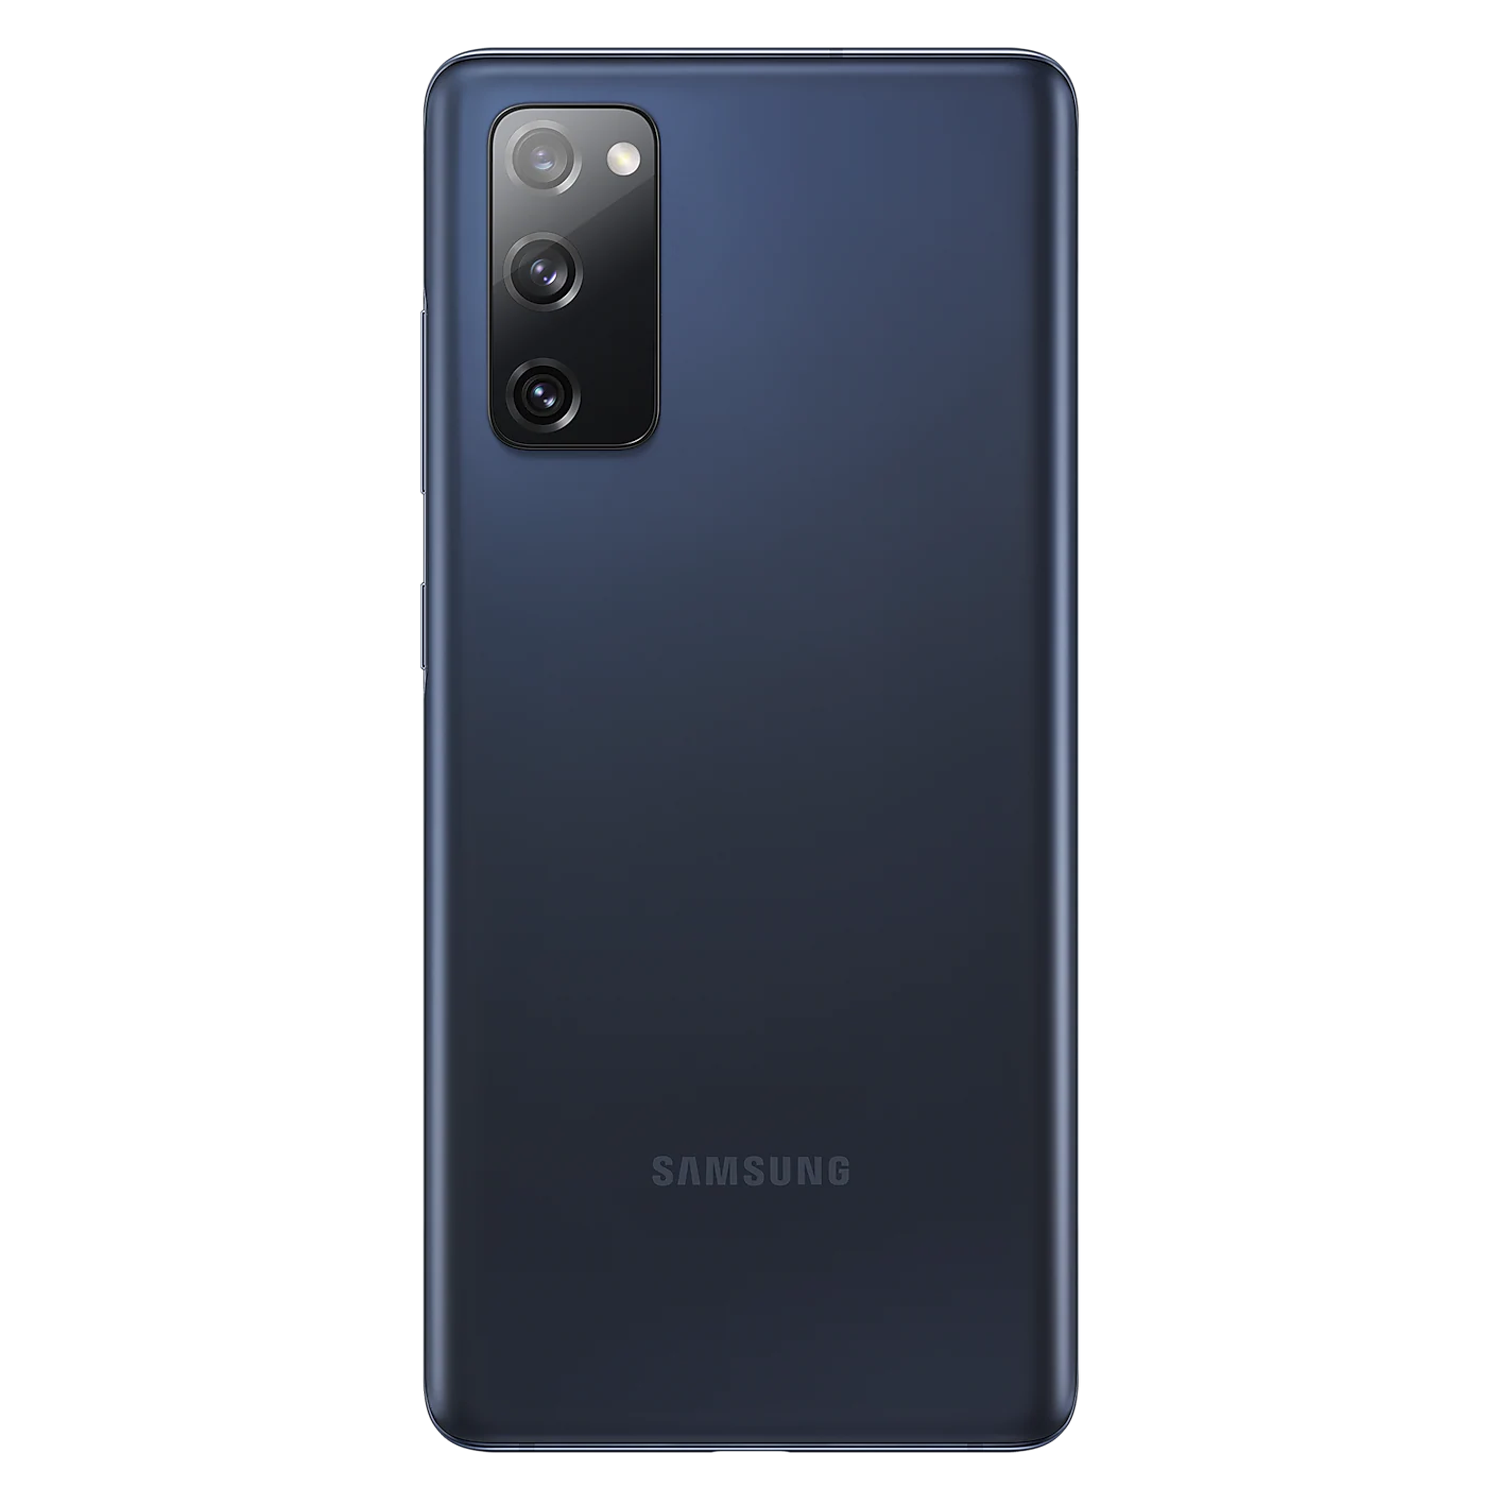 Smartphone Samsung Galaxy S20 FE 5G G781B 128GB 6GB RAM Dual SIM Tela 6.5" - Azul
